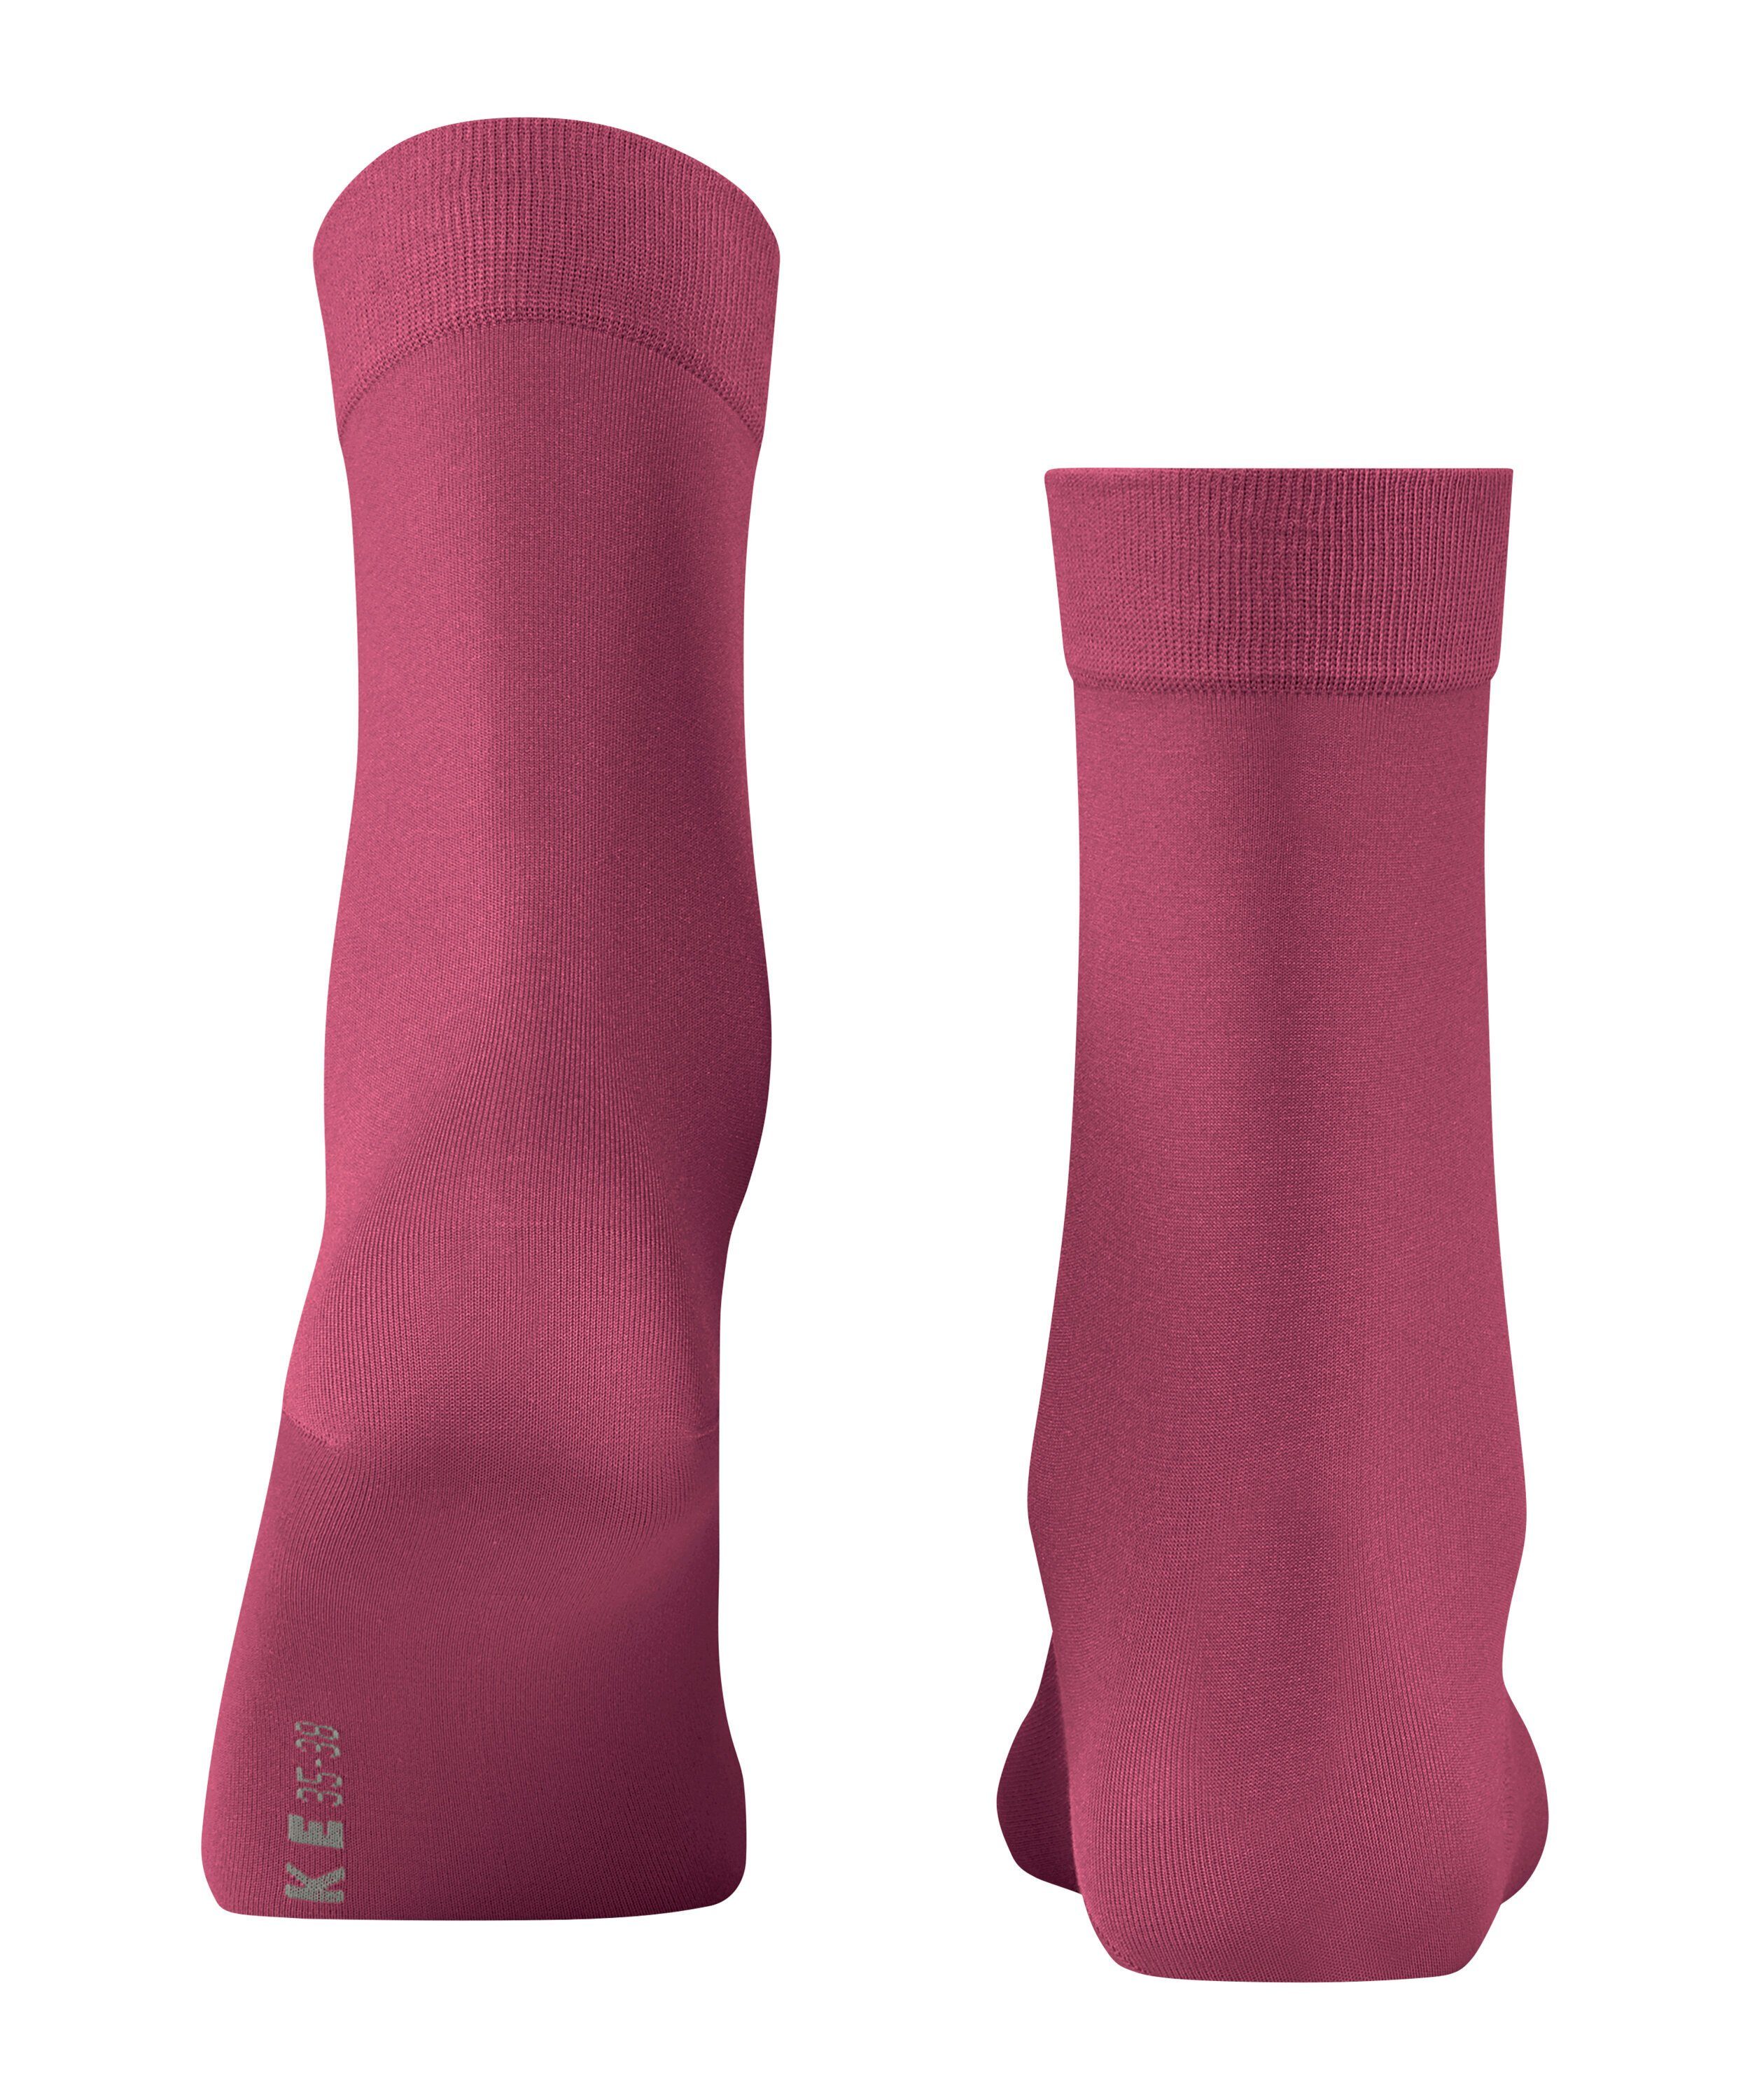 Socken FALKE Touch Cotton rose (8025) (1-Paar) engl.